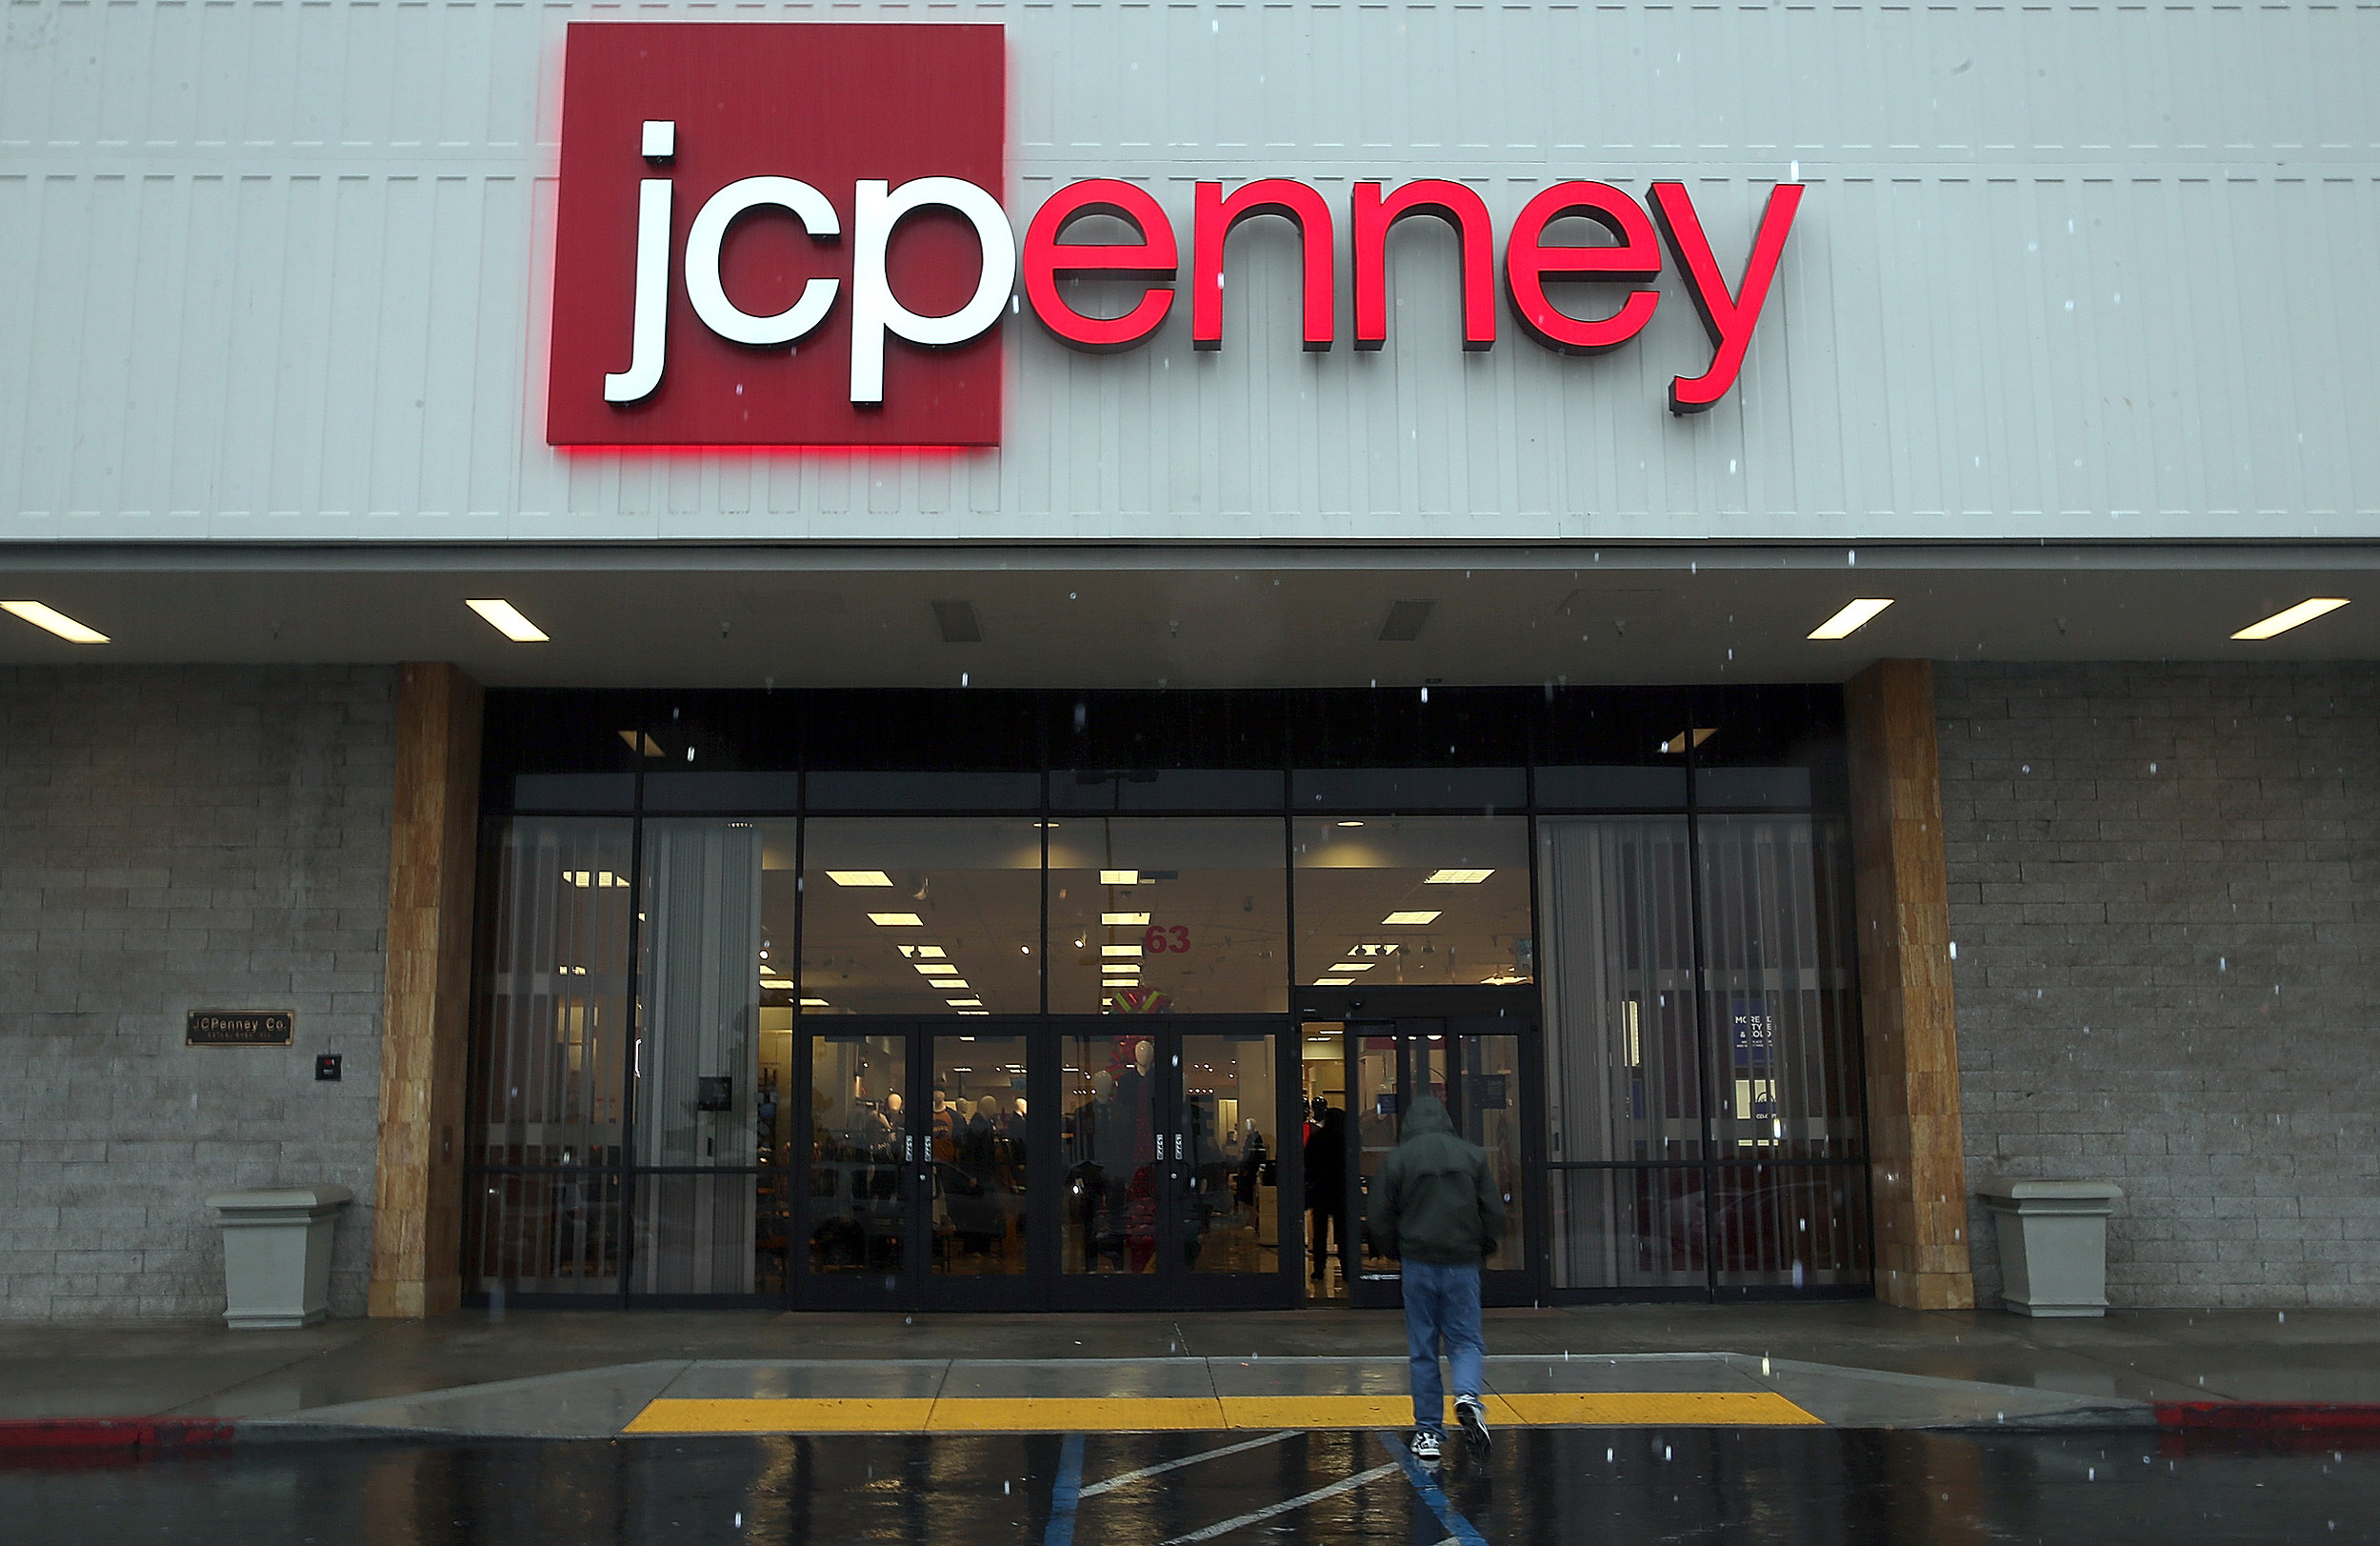 jcpenney jersey garden mall